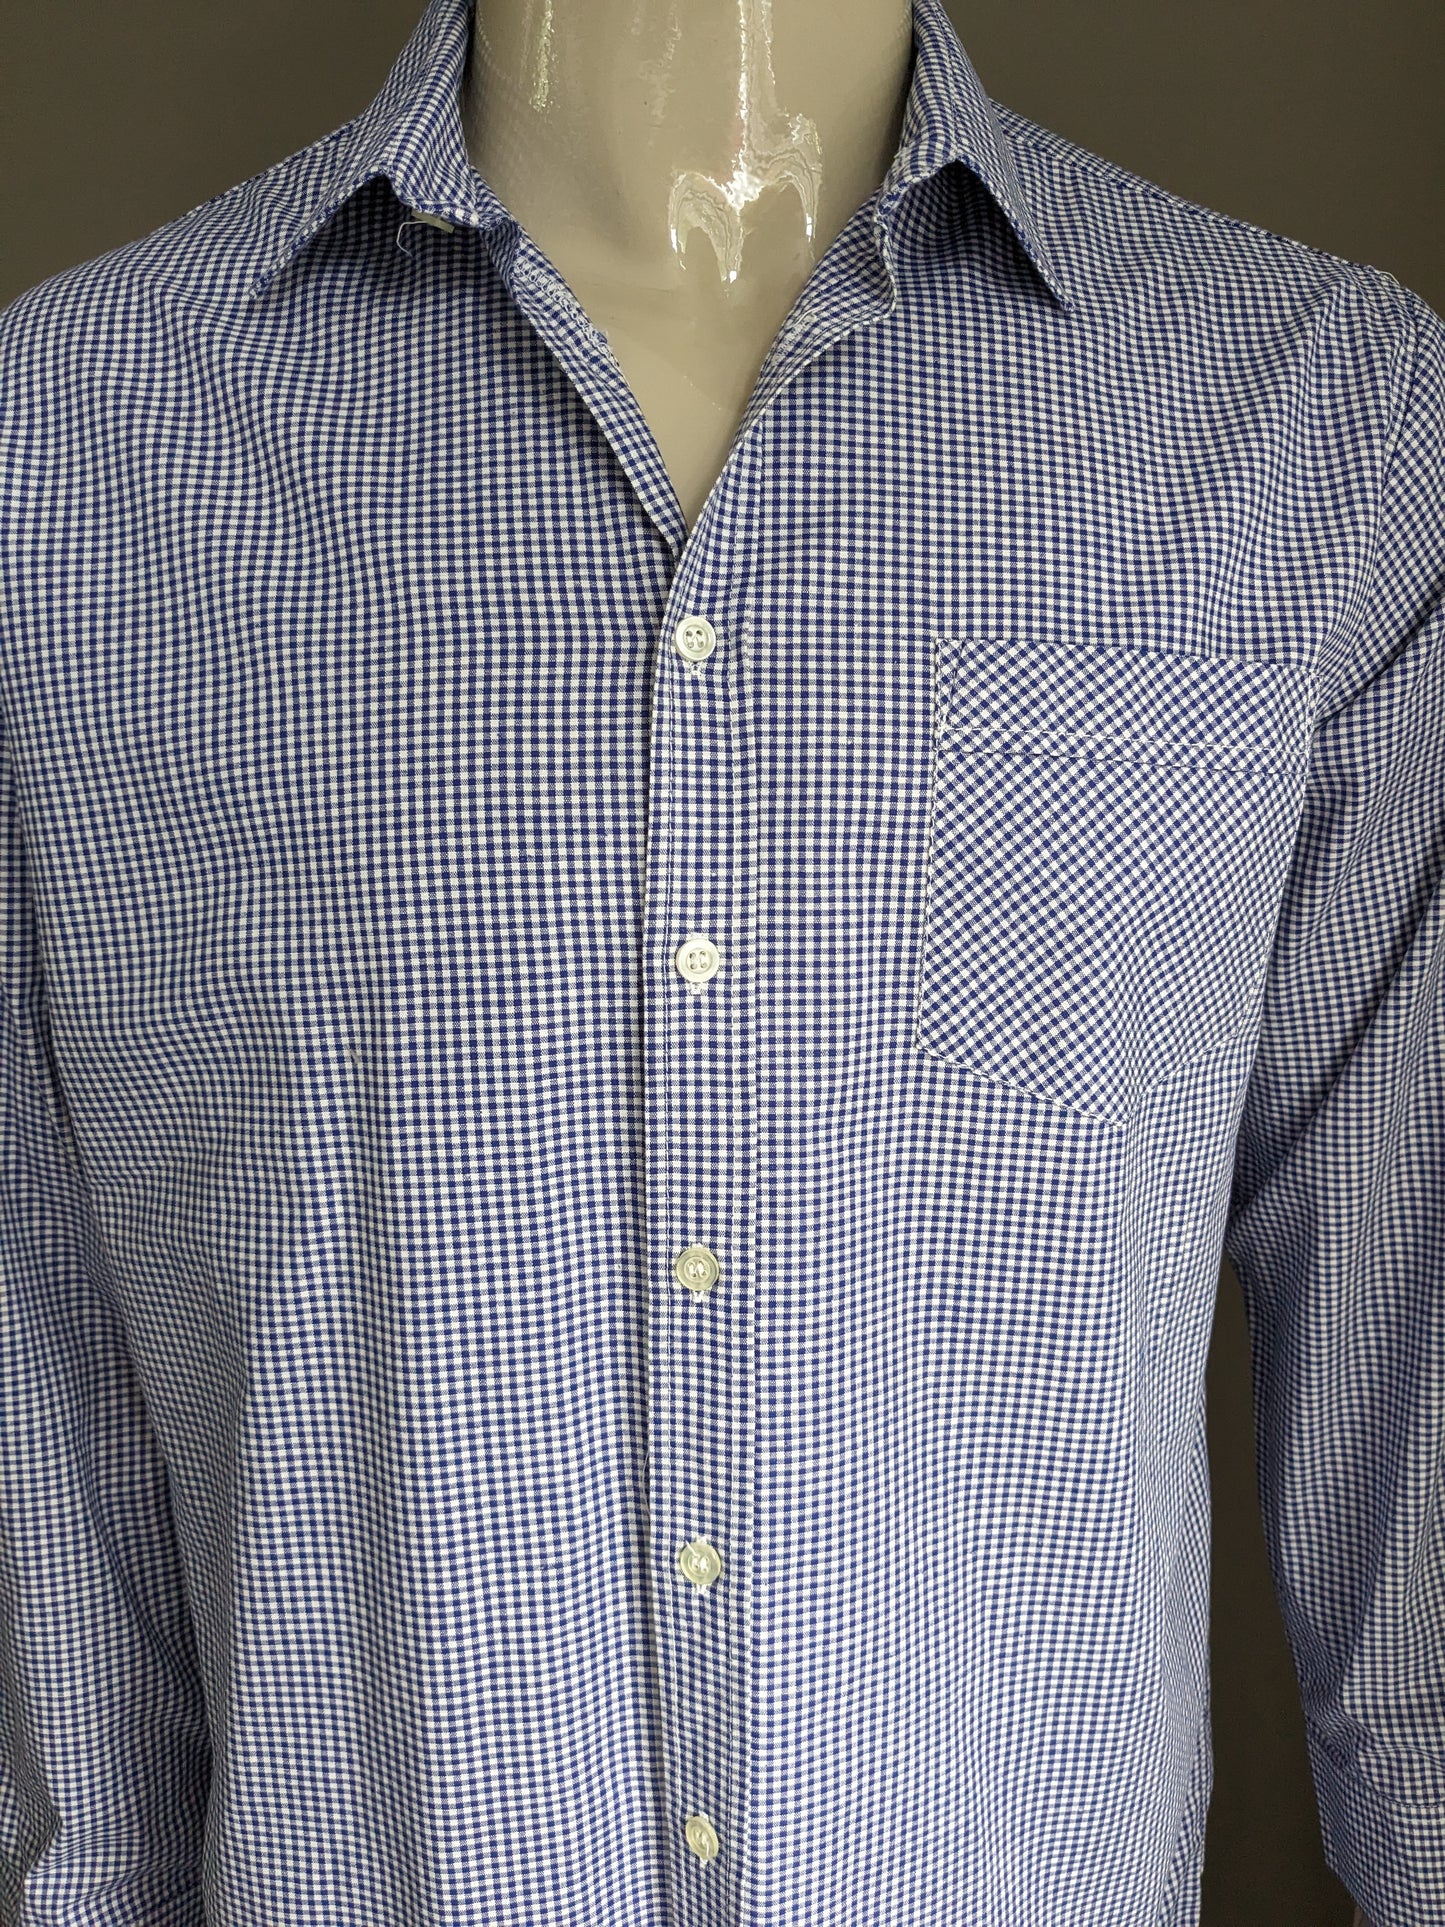 Camicia vintage degli anni '70. Motivo a scacchi bianchi blu. Taglia L.